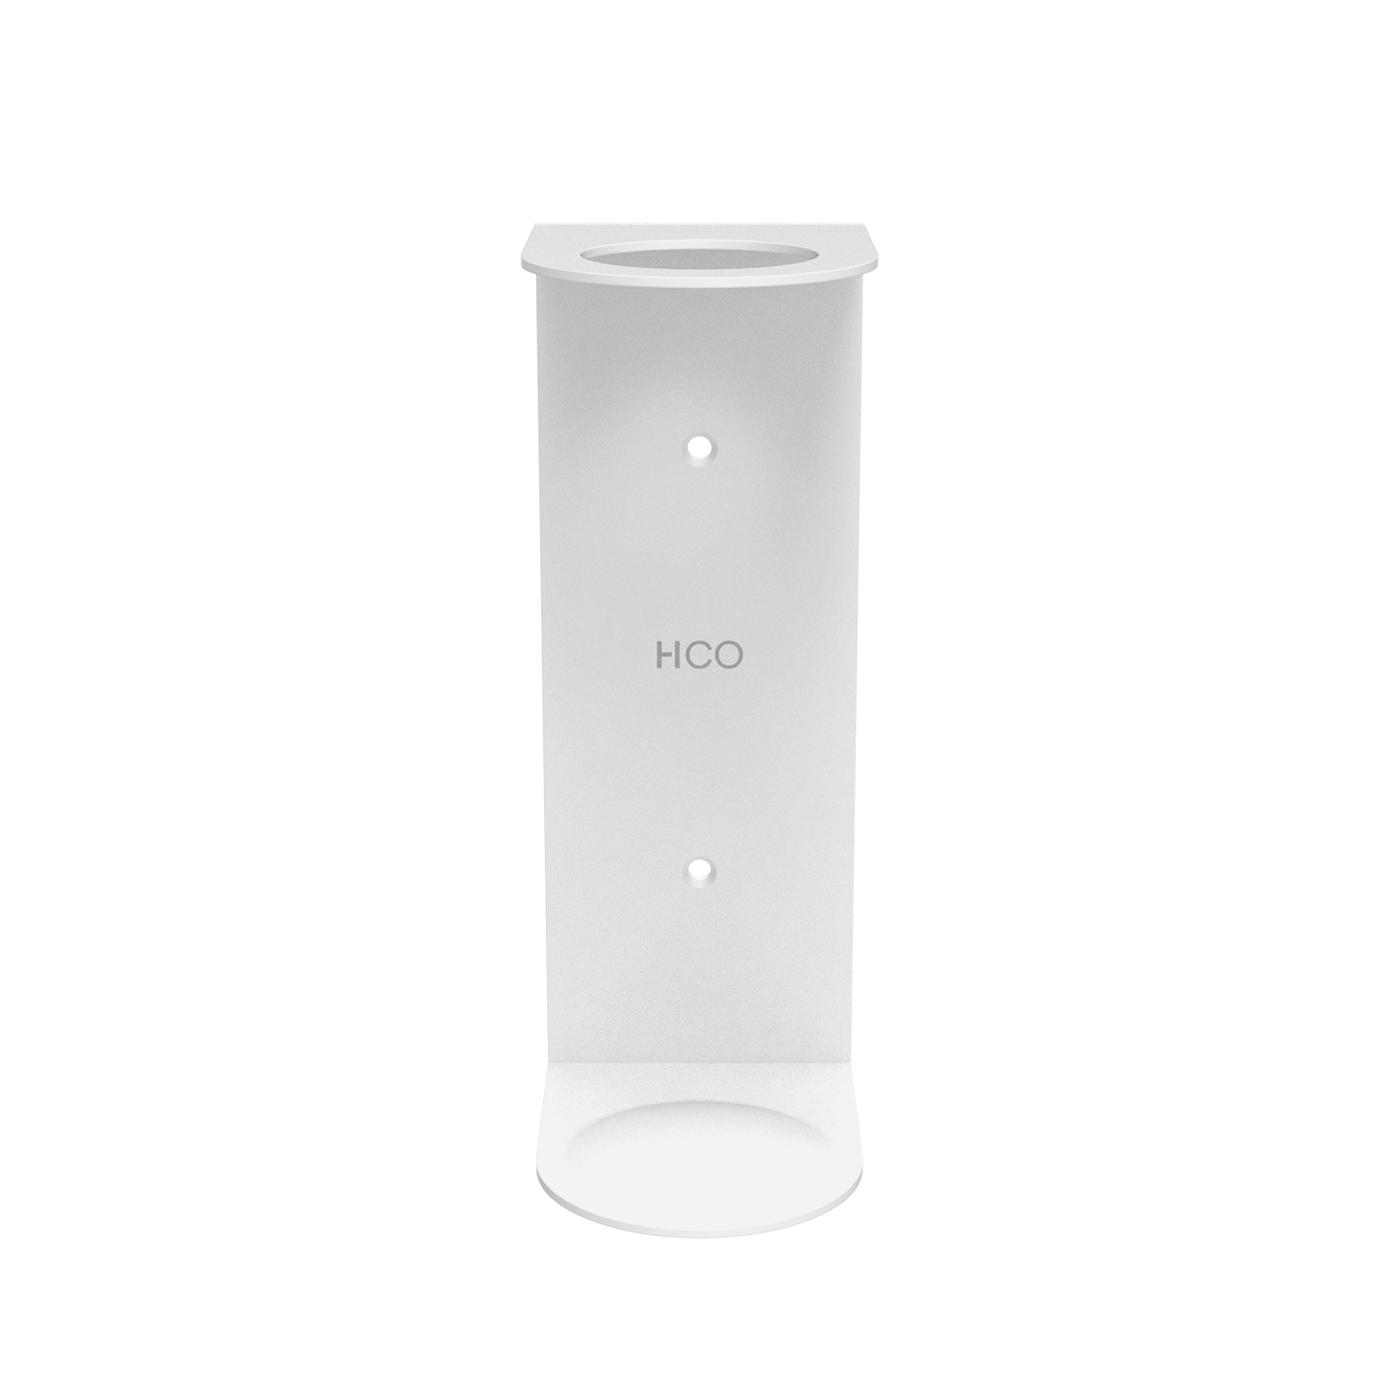 HCO - Single Soap Dispenser Holder